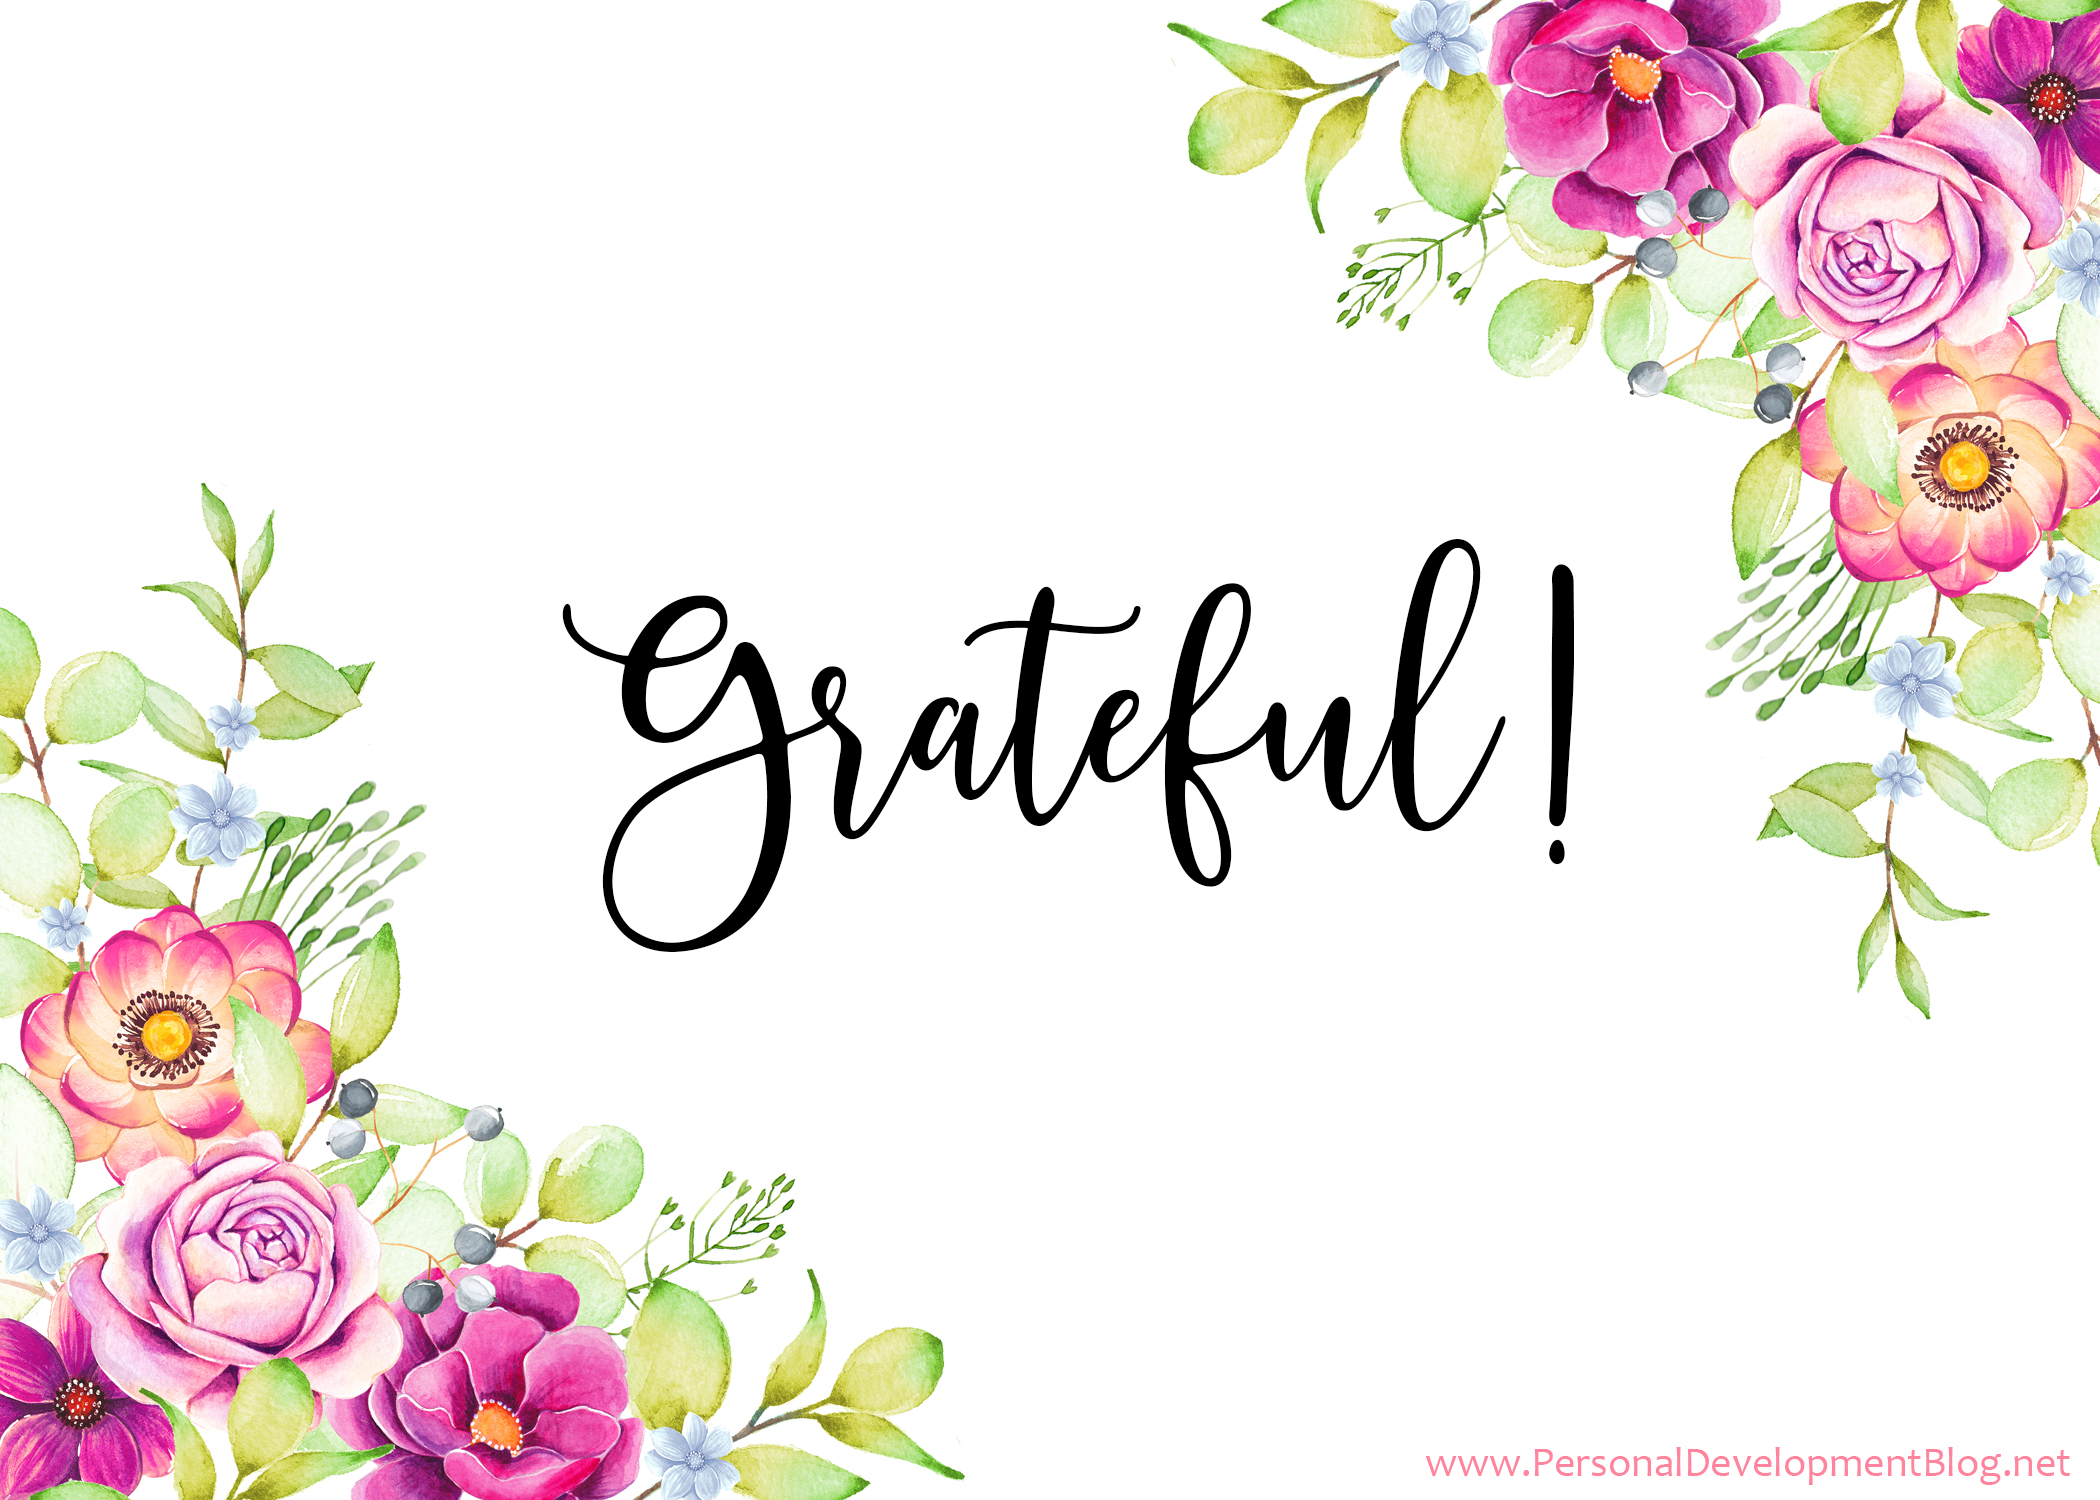 Grateful Ecard Floral Illustrations 1-9 Grateful-PDBnet